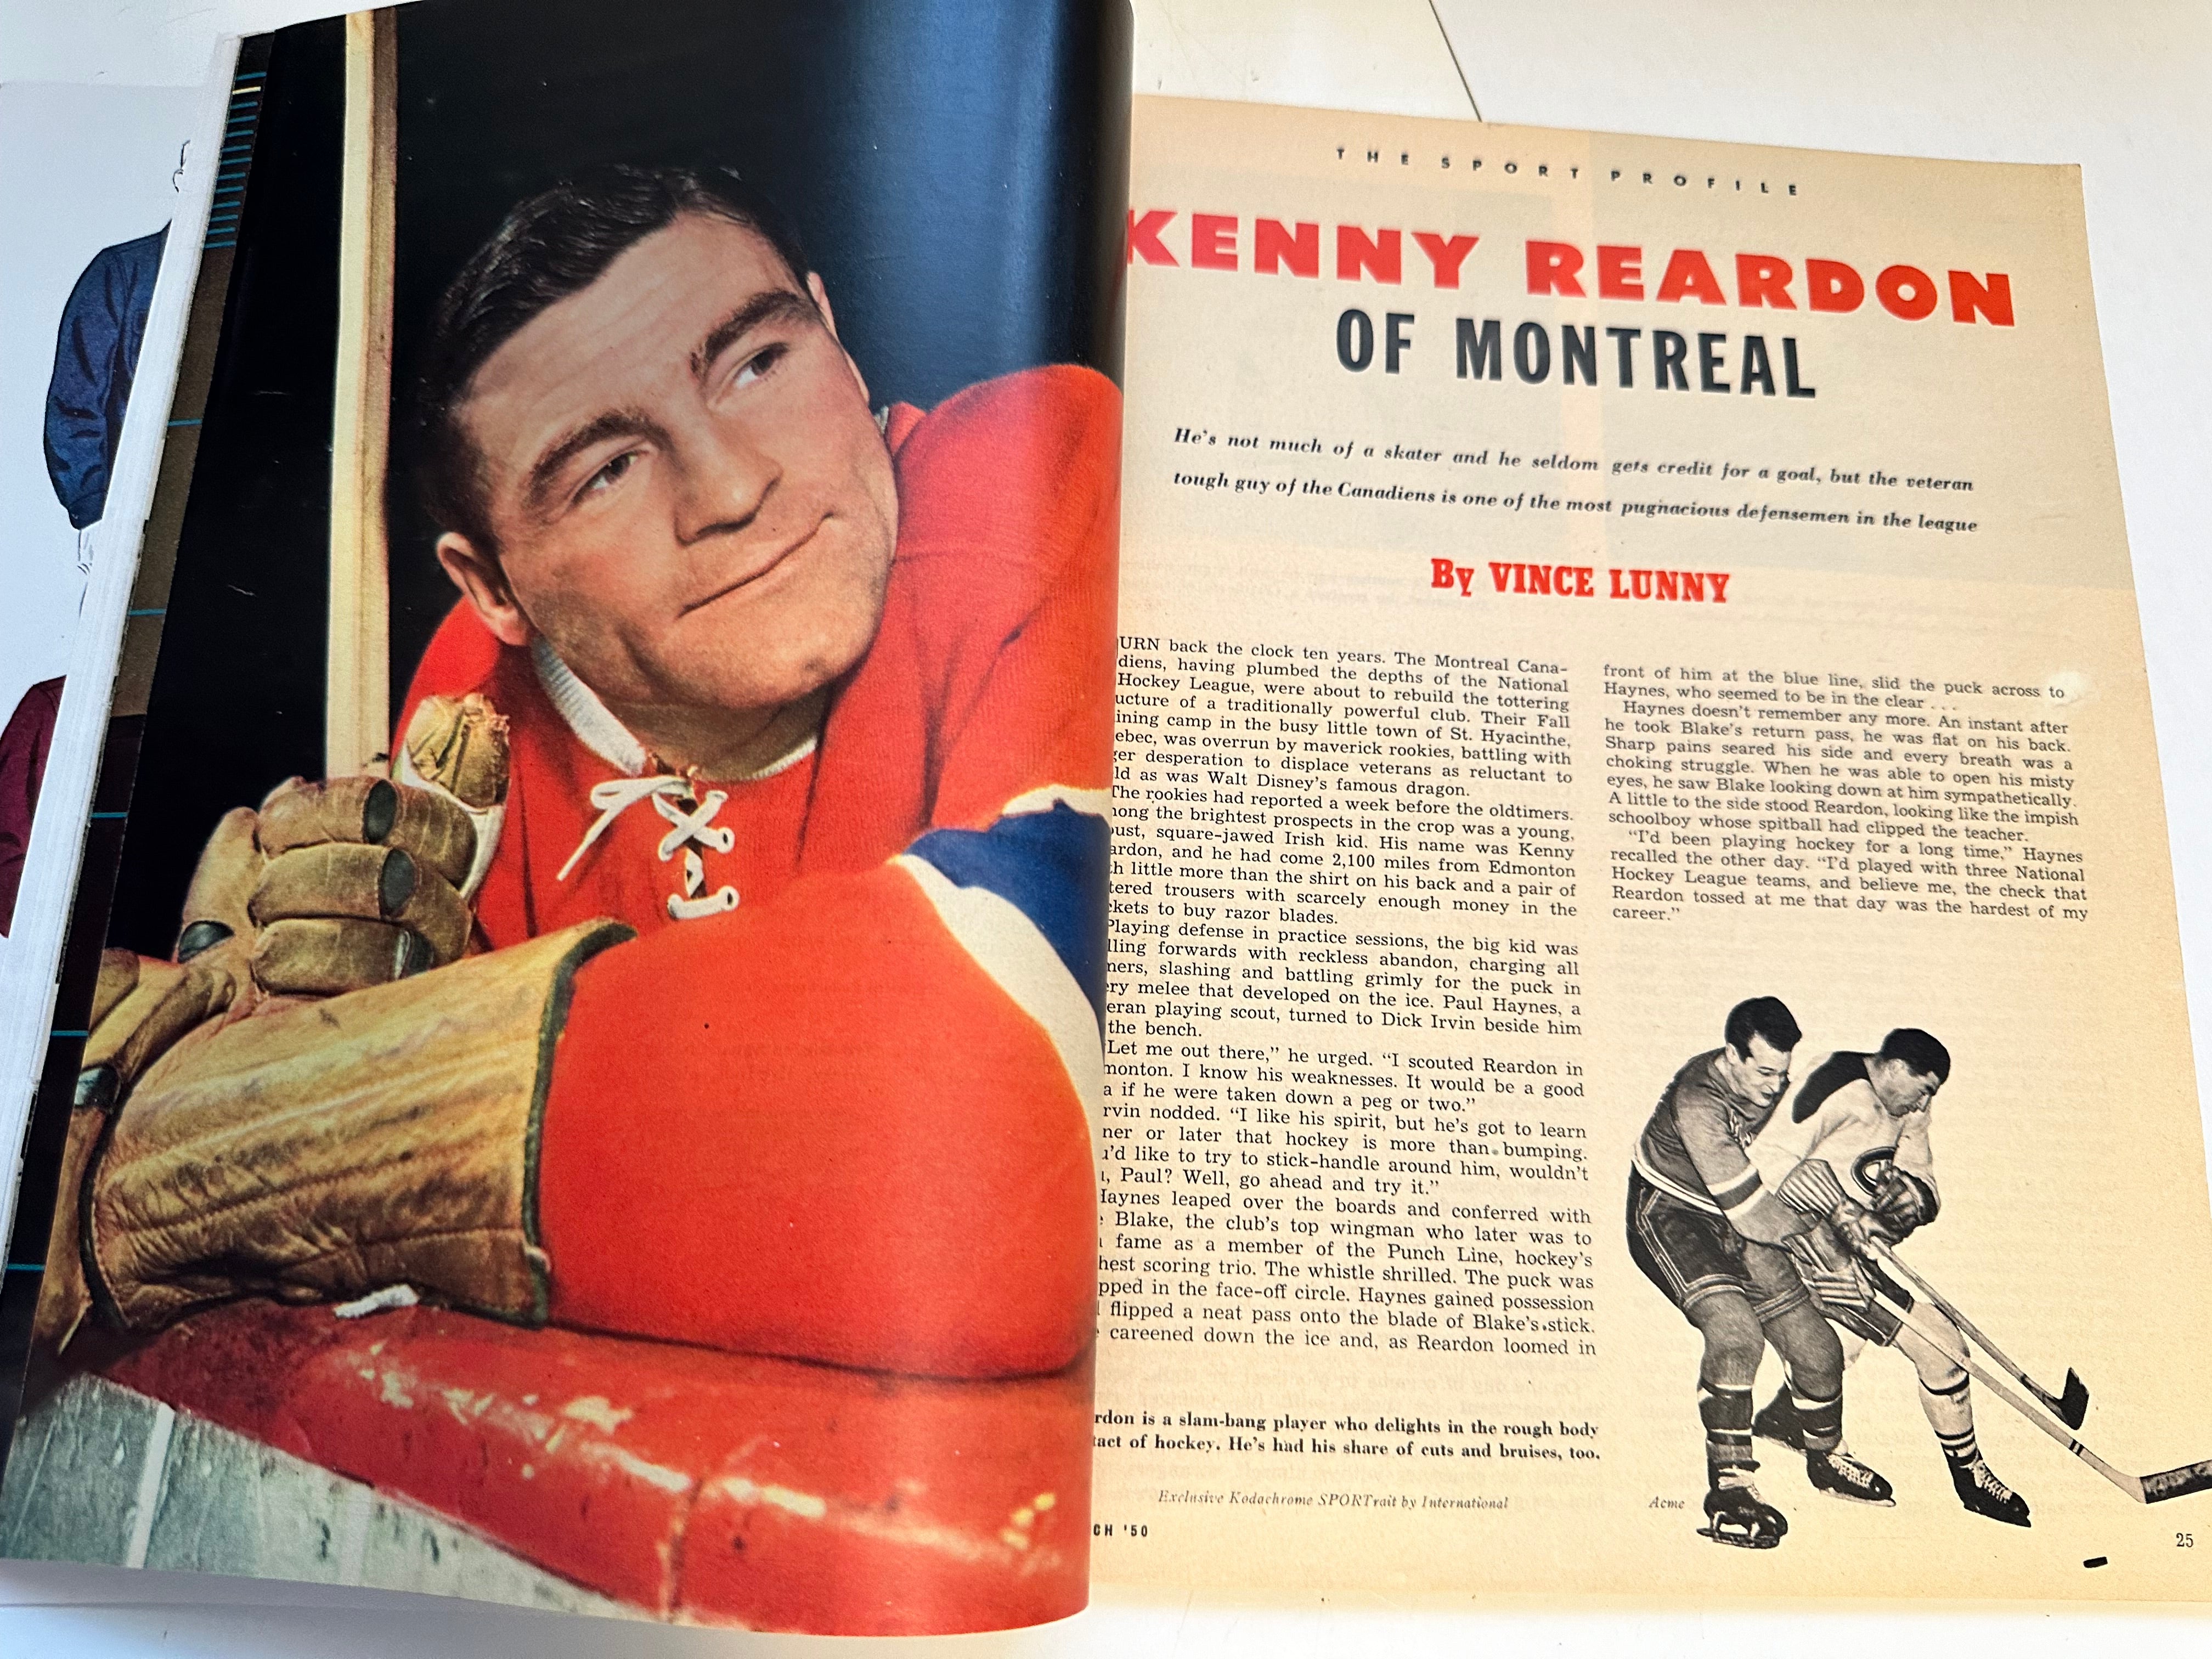 Sport Magazine George Mikan rare high grade condition magazine 1950